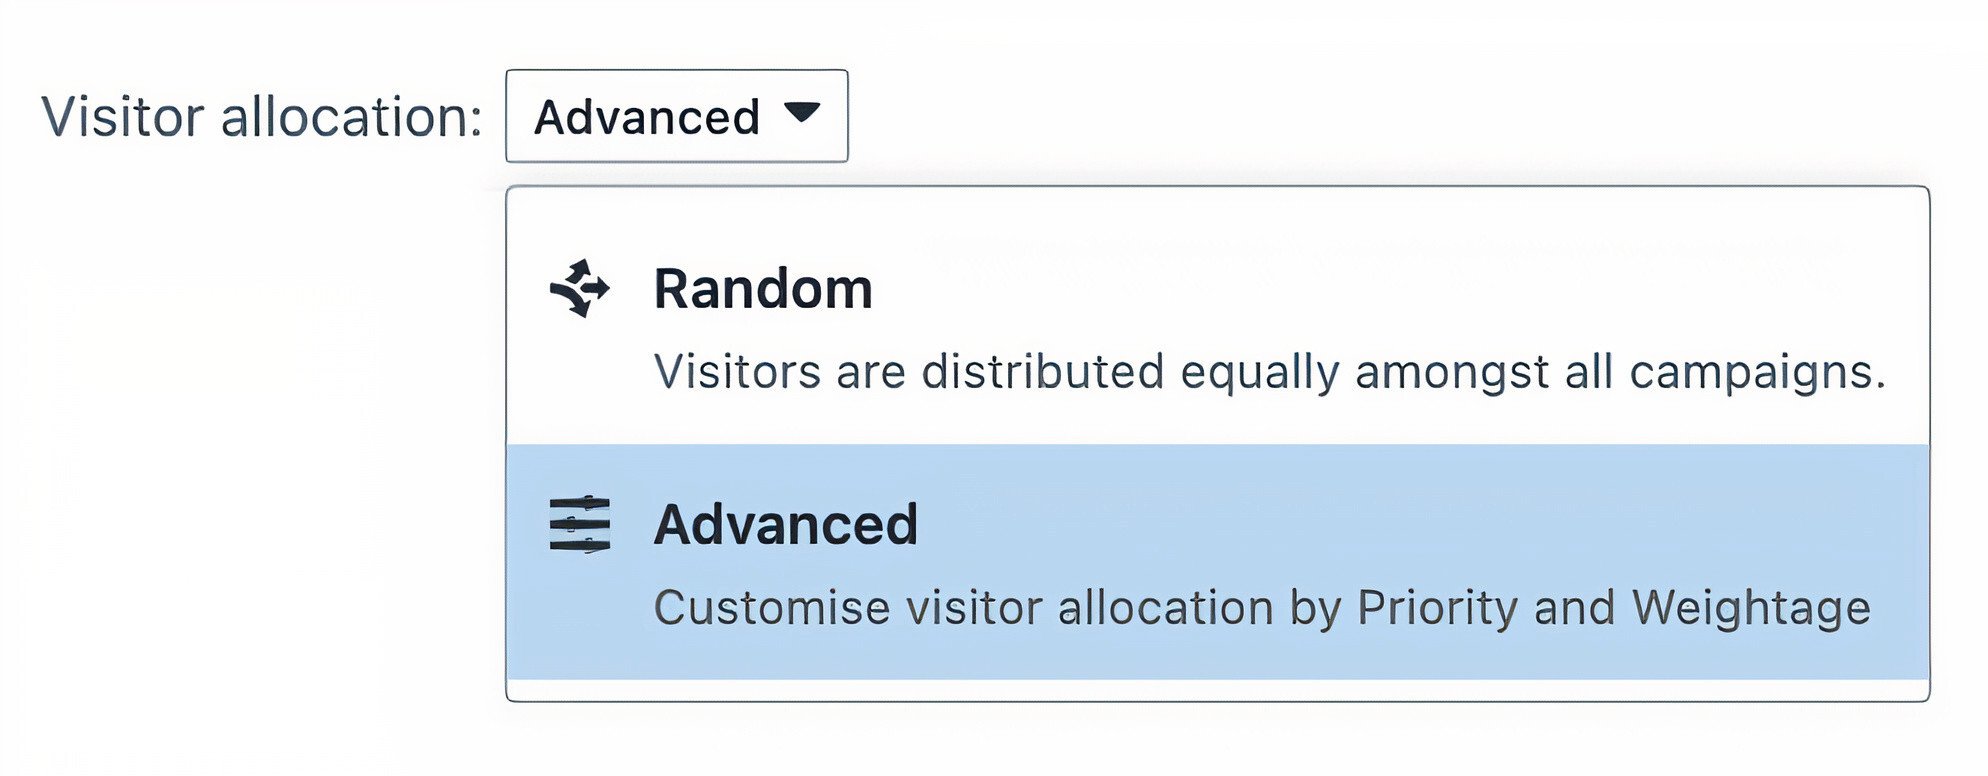 Random and Advanced visitor allocation